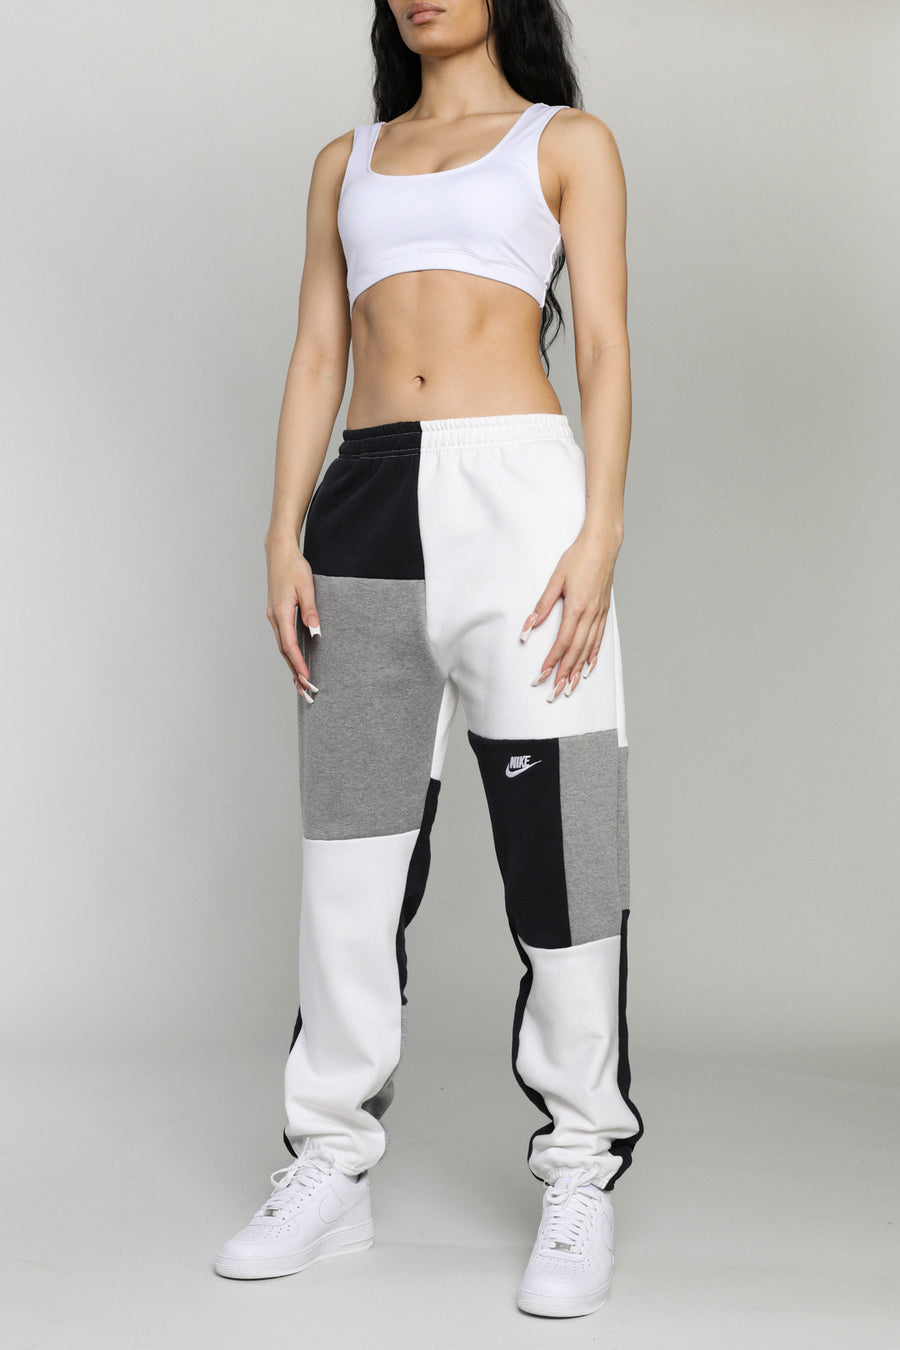 Unisex Rework Nike Patchwork Sweatpants - XS, S, M, L